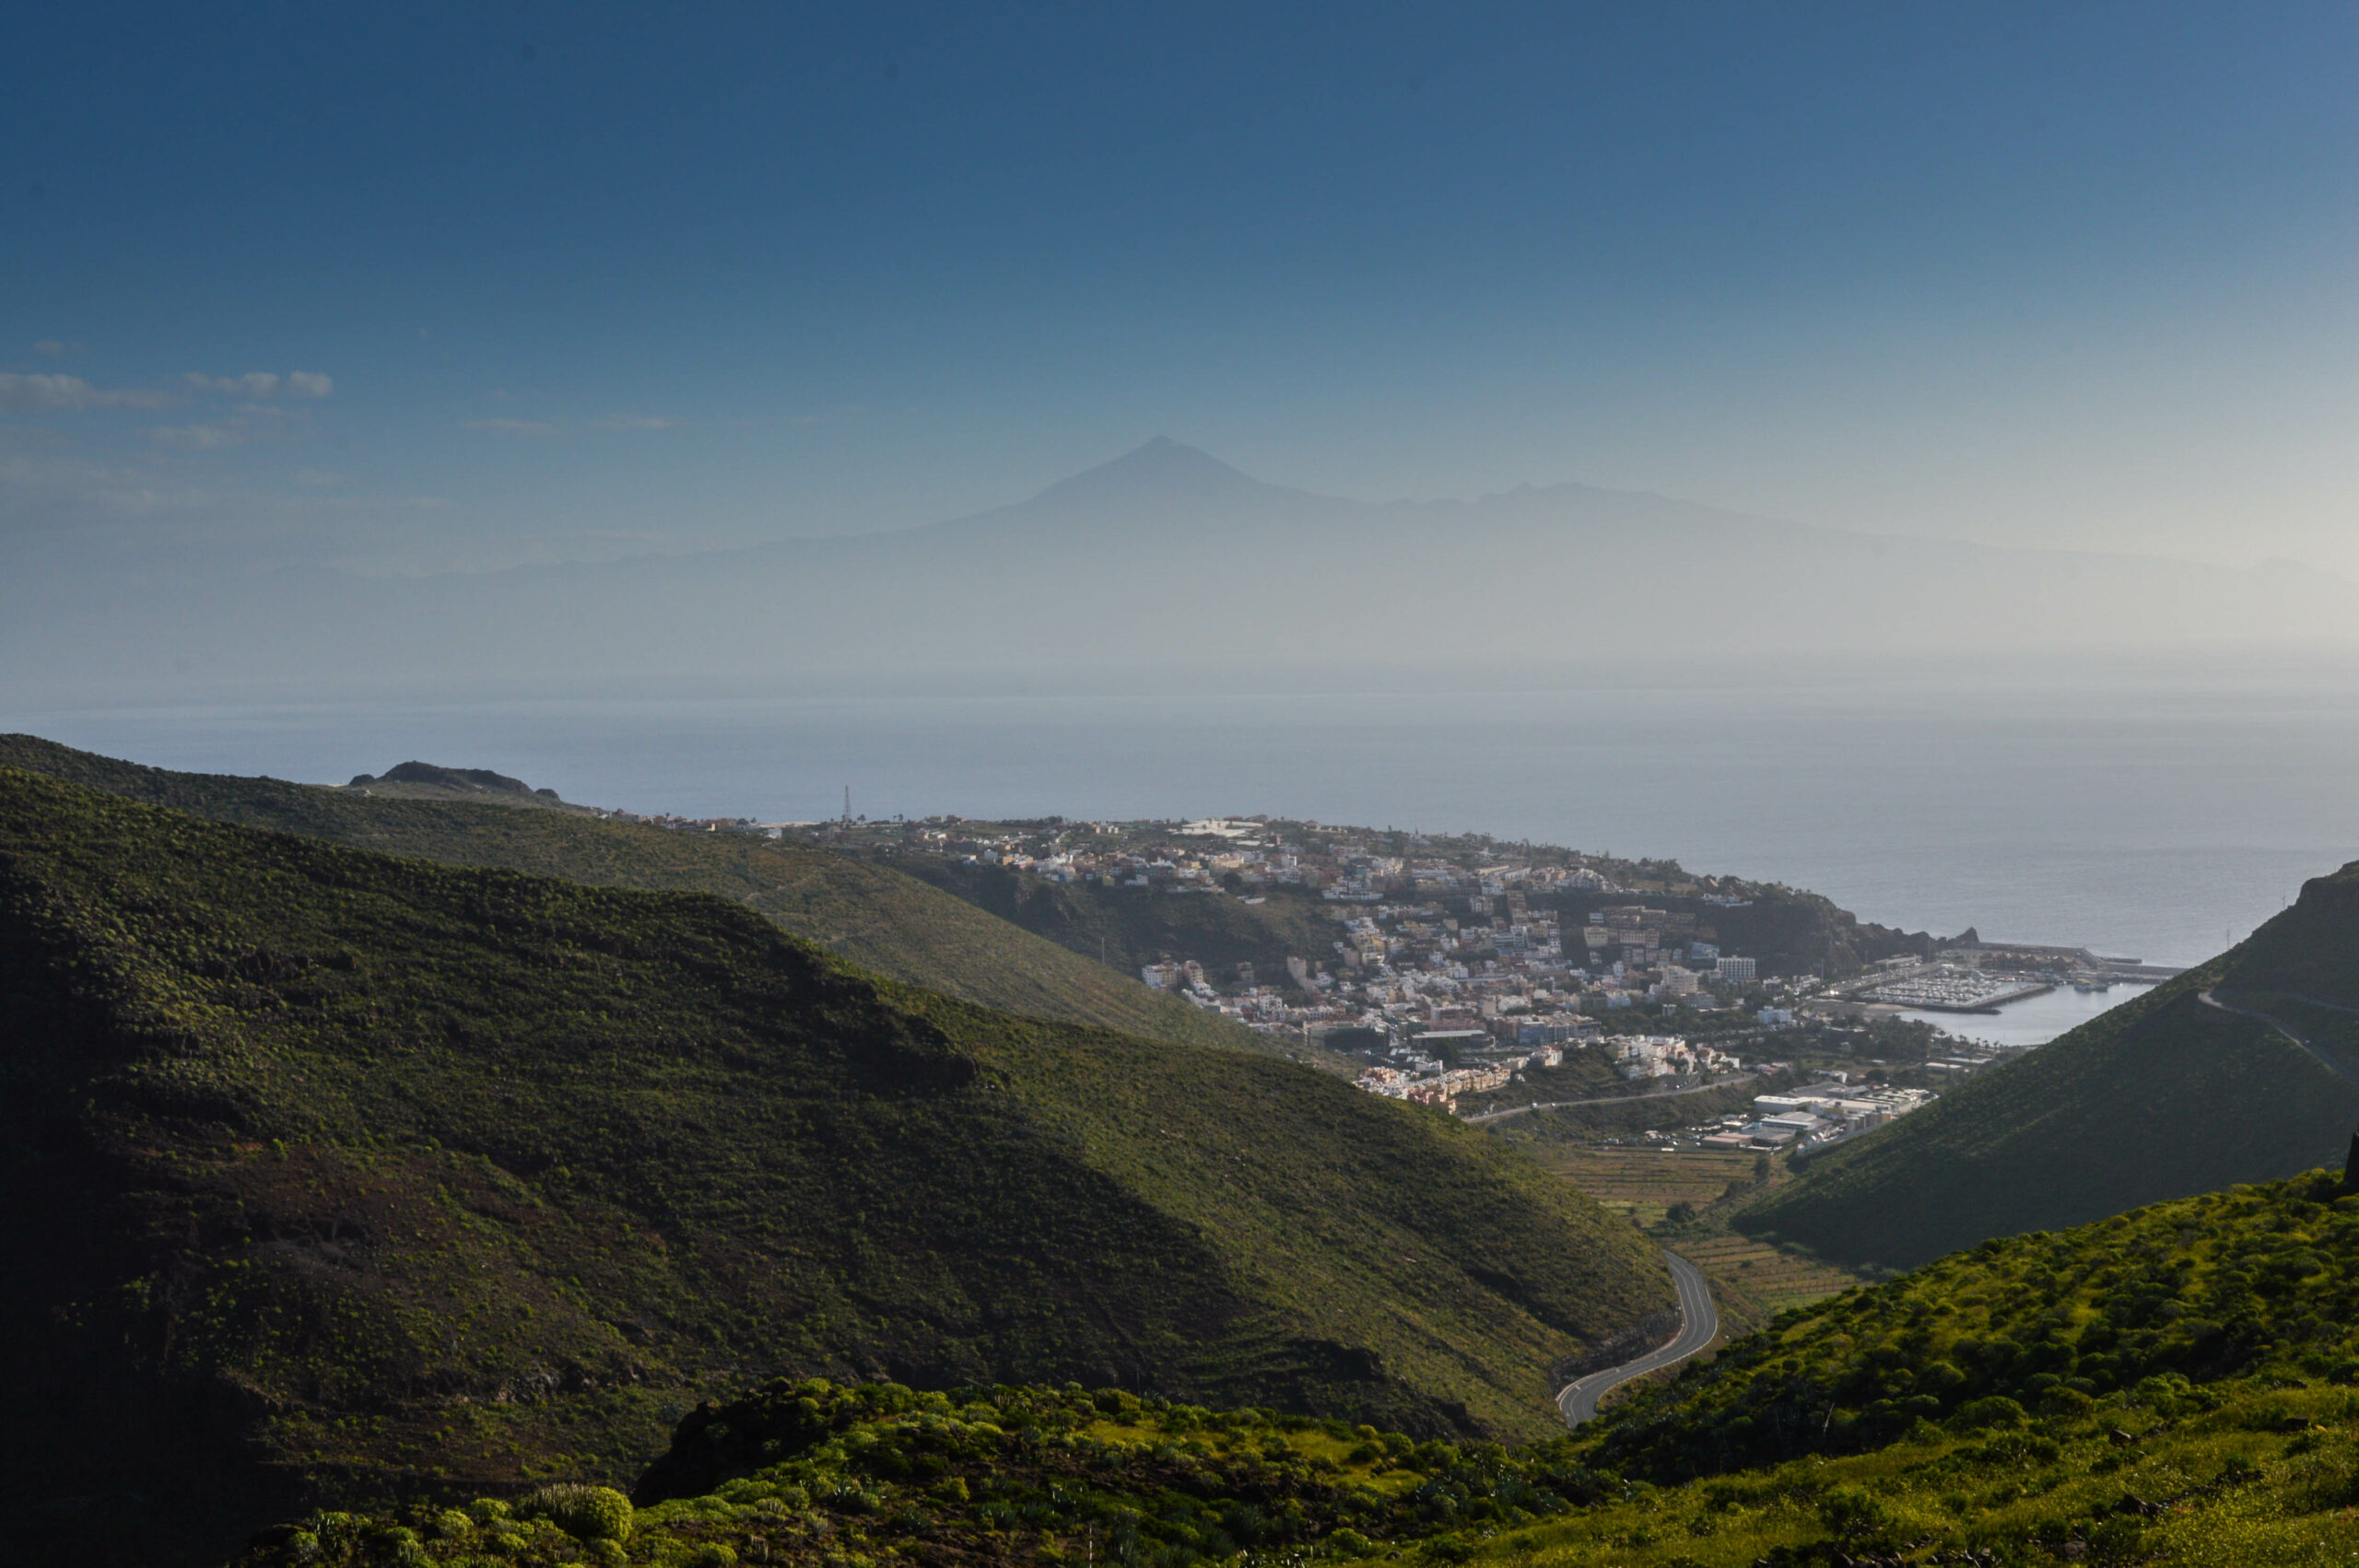 Vue en hauteur de San Sebastian de la gomera : collines verdoyantes au premier plan, ville au second plan, et le contour au loin, derrière la mer, du volcan Teide